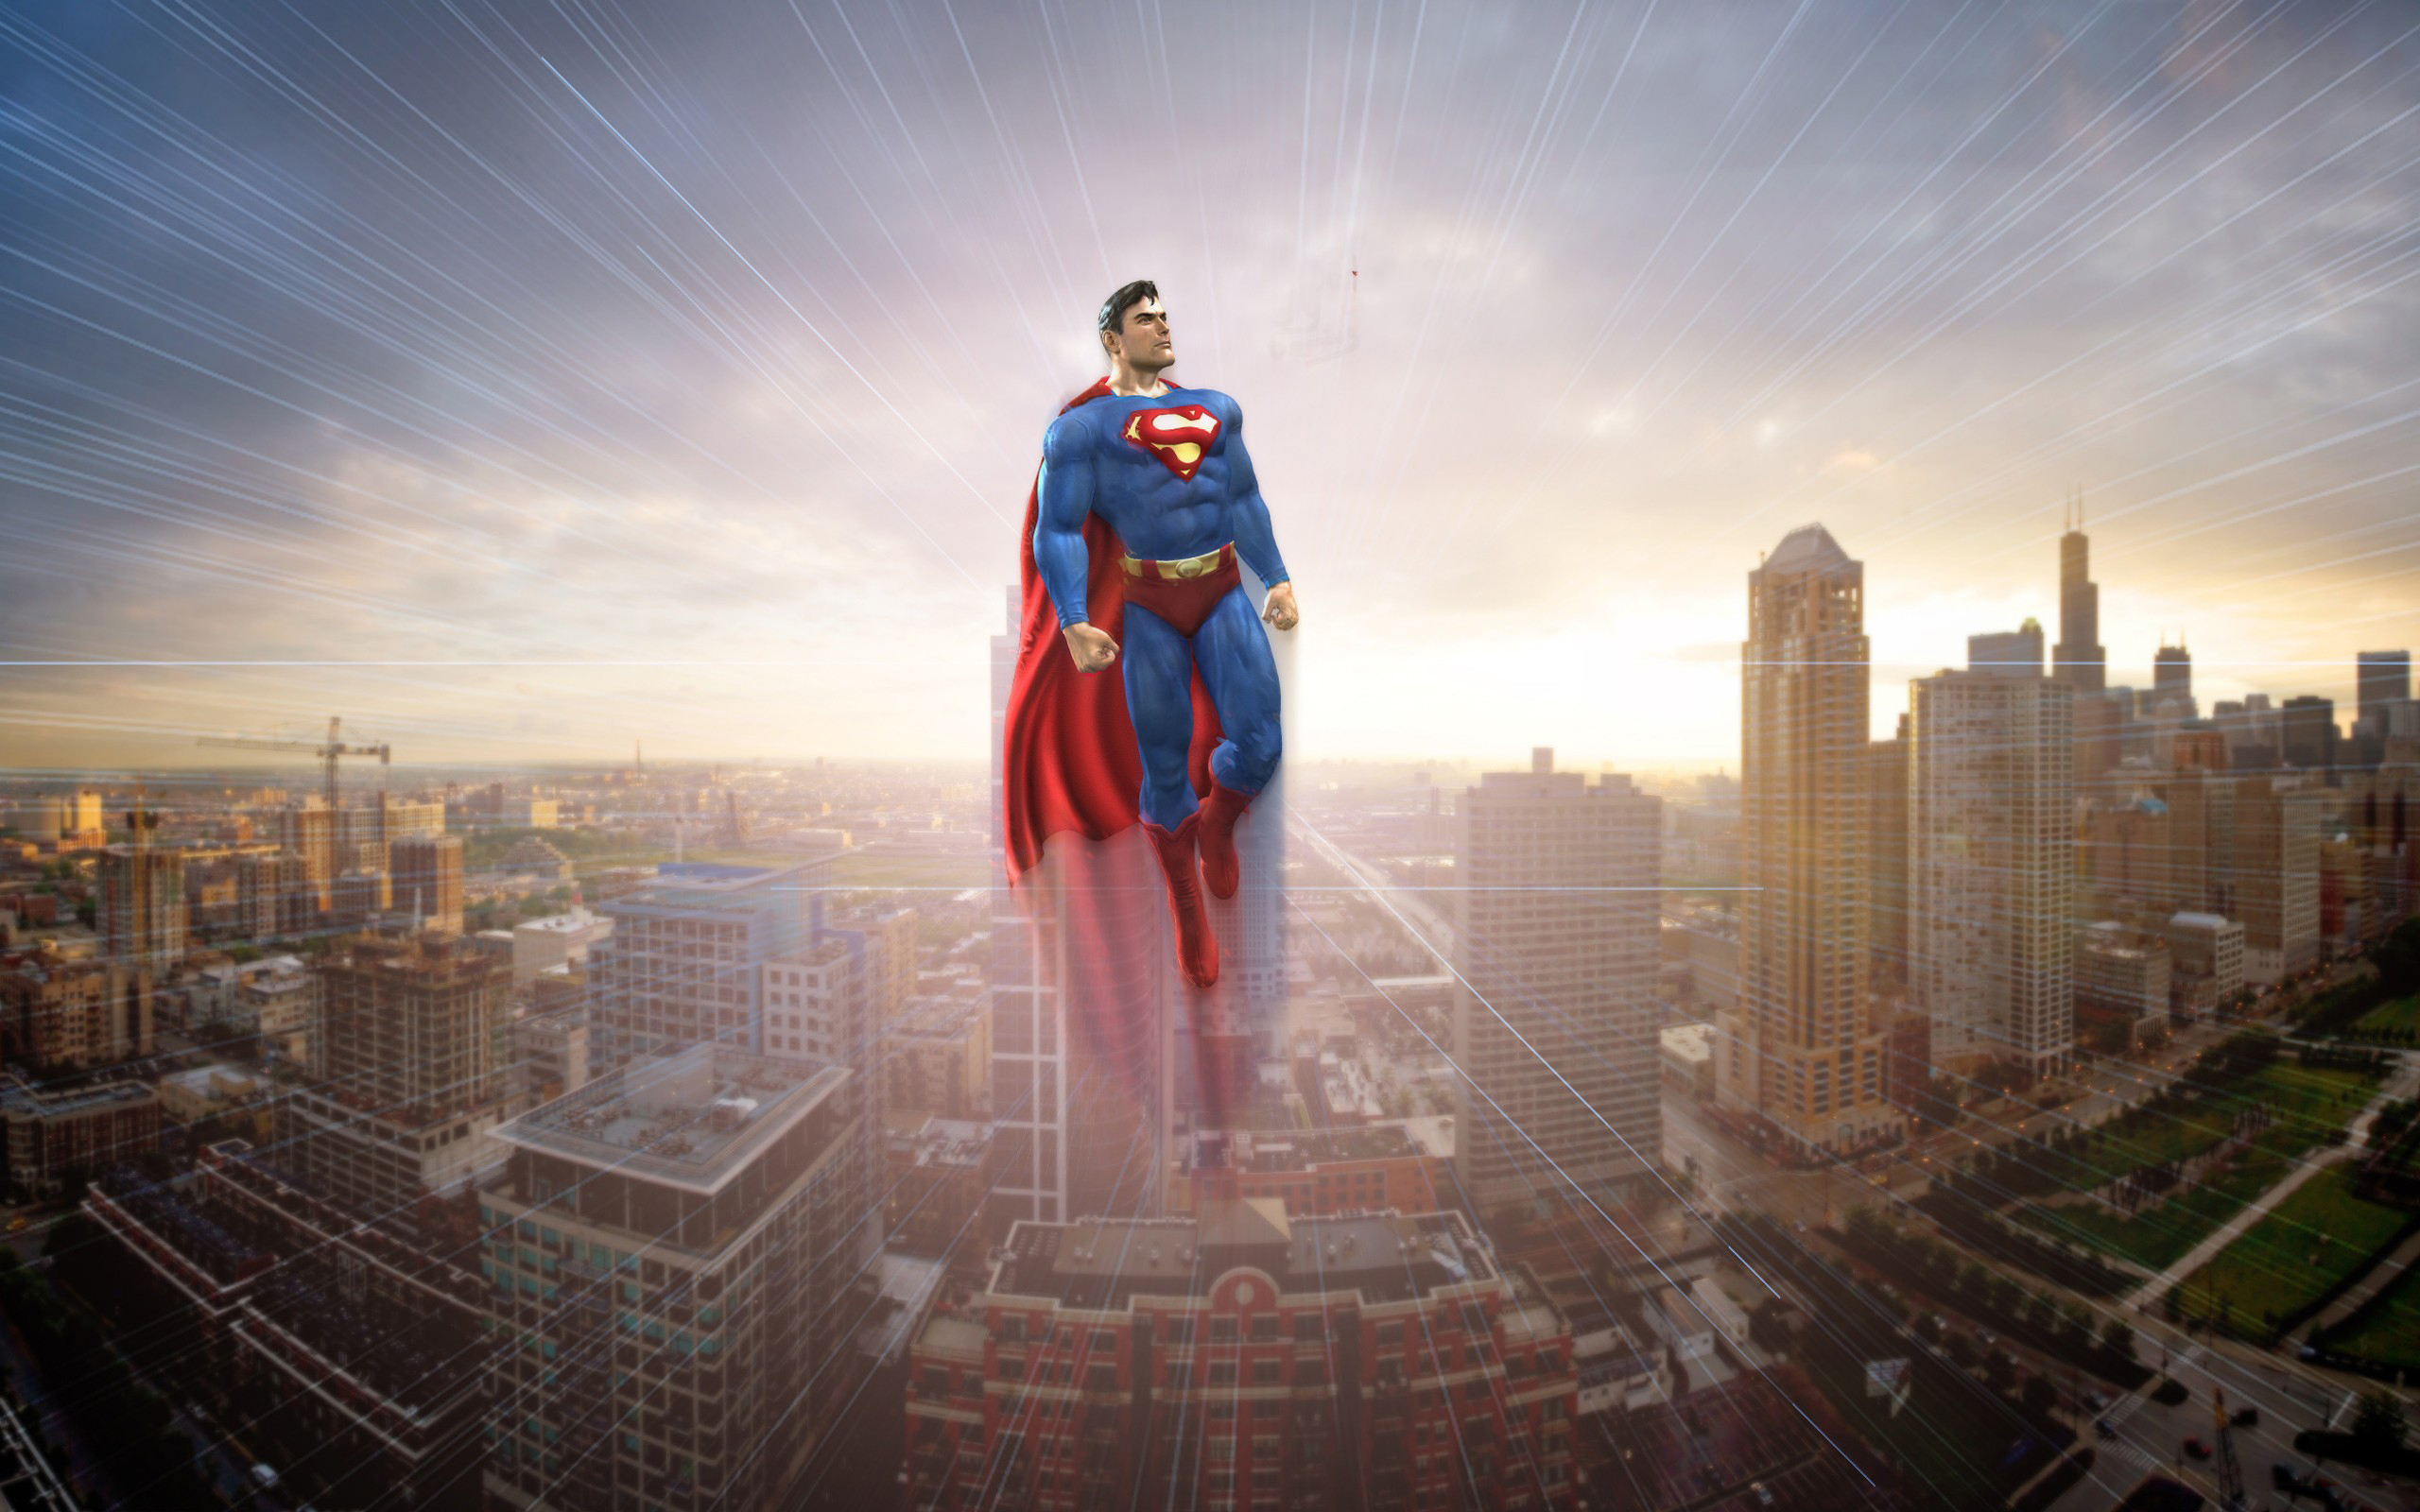 Marvel super man. Супермен. Супергерой. Супергерой в городе. Супермен на фоне города.